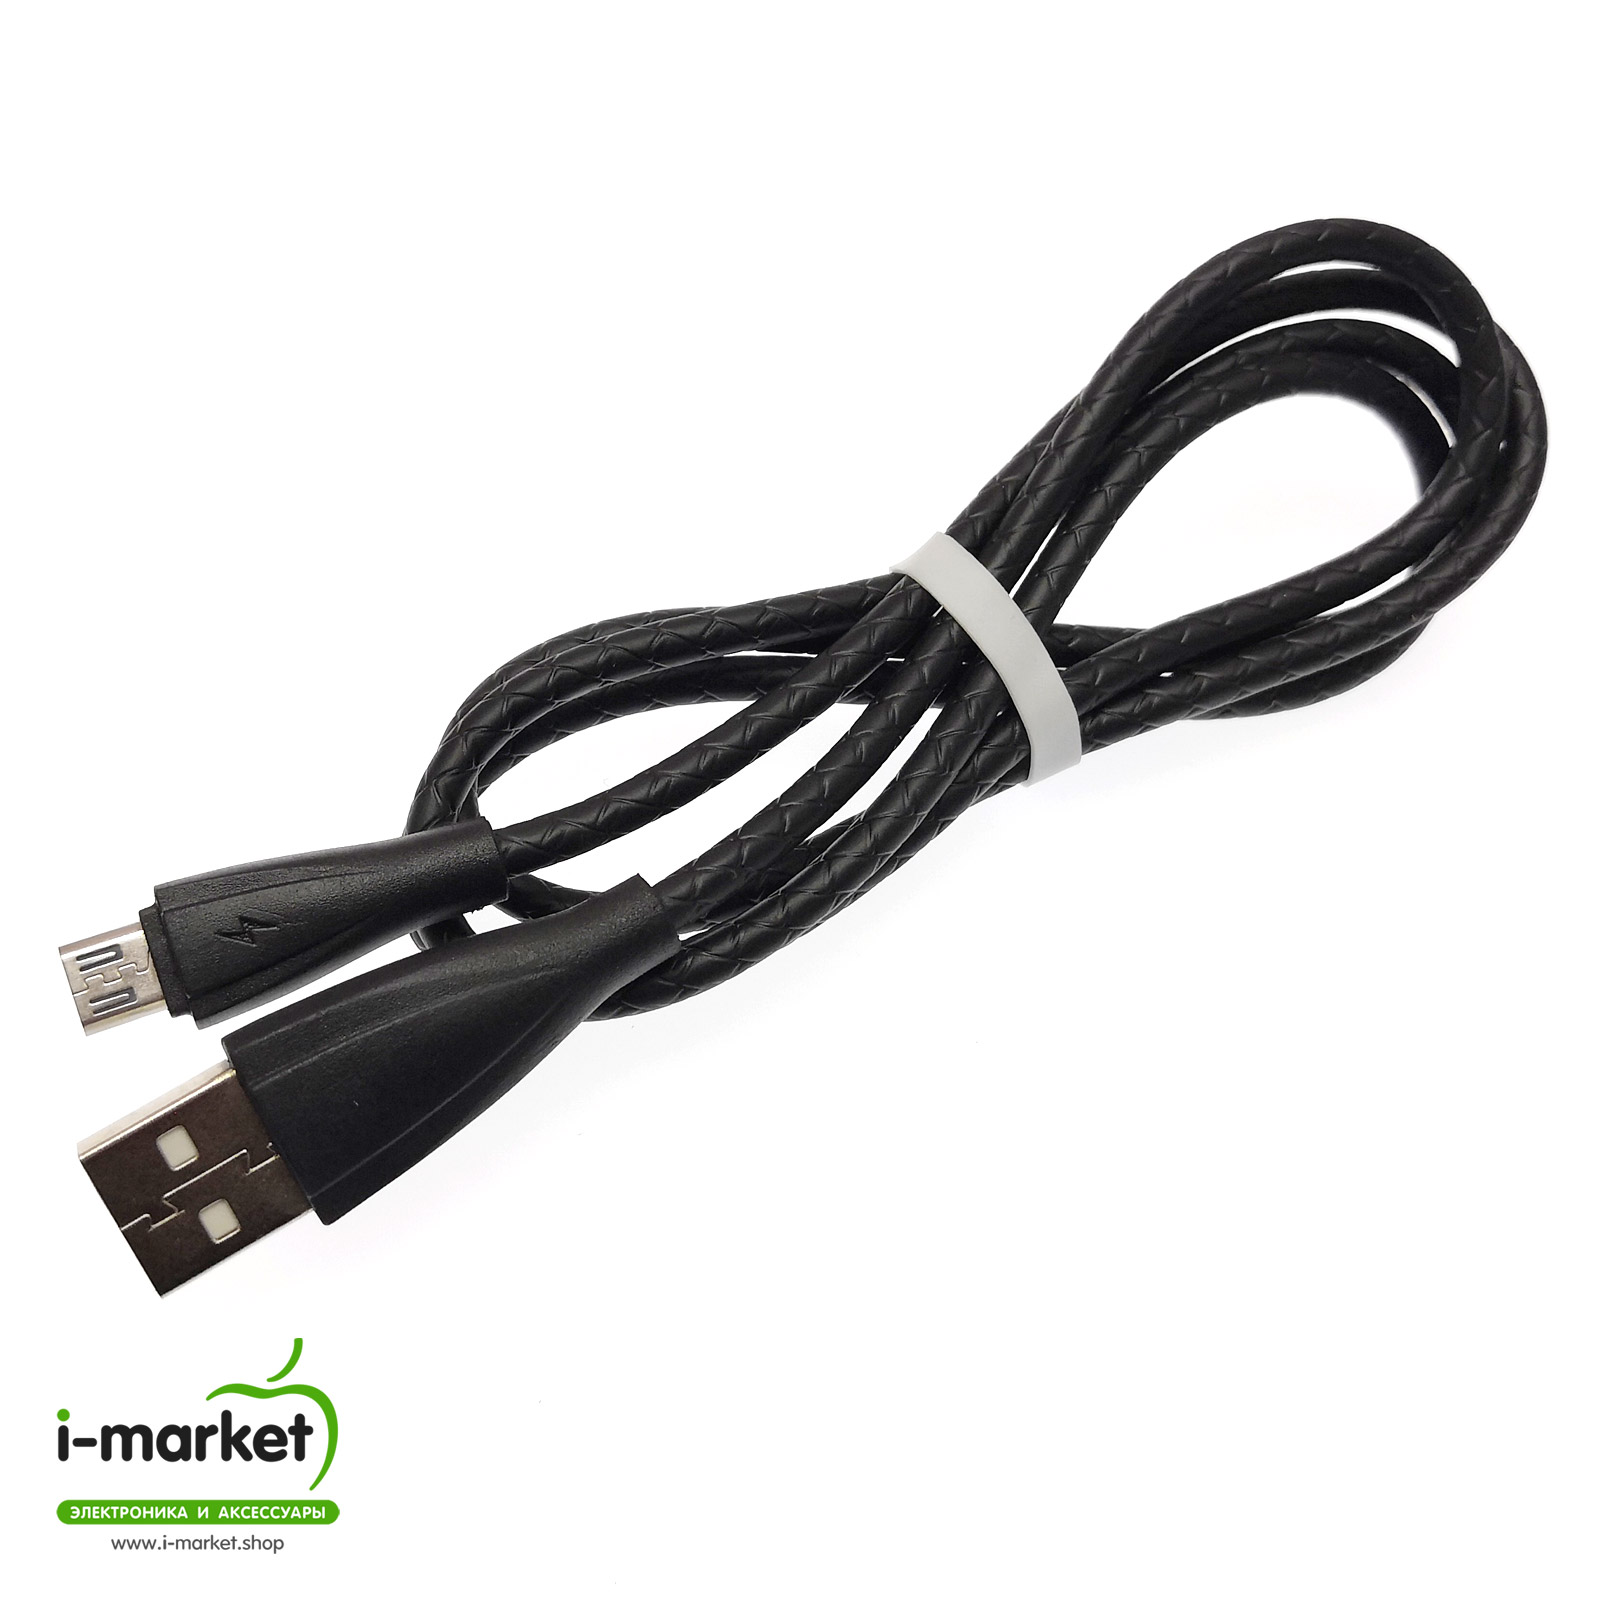 USB Дата кабель Micro USB, силиконовый, текстурированная оплетка, длина 1 метр, цвет черный.